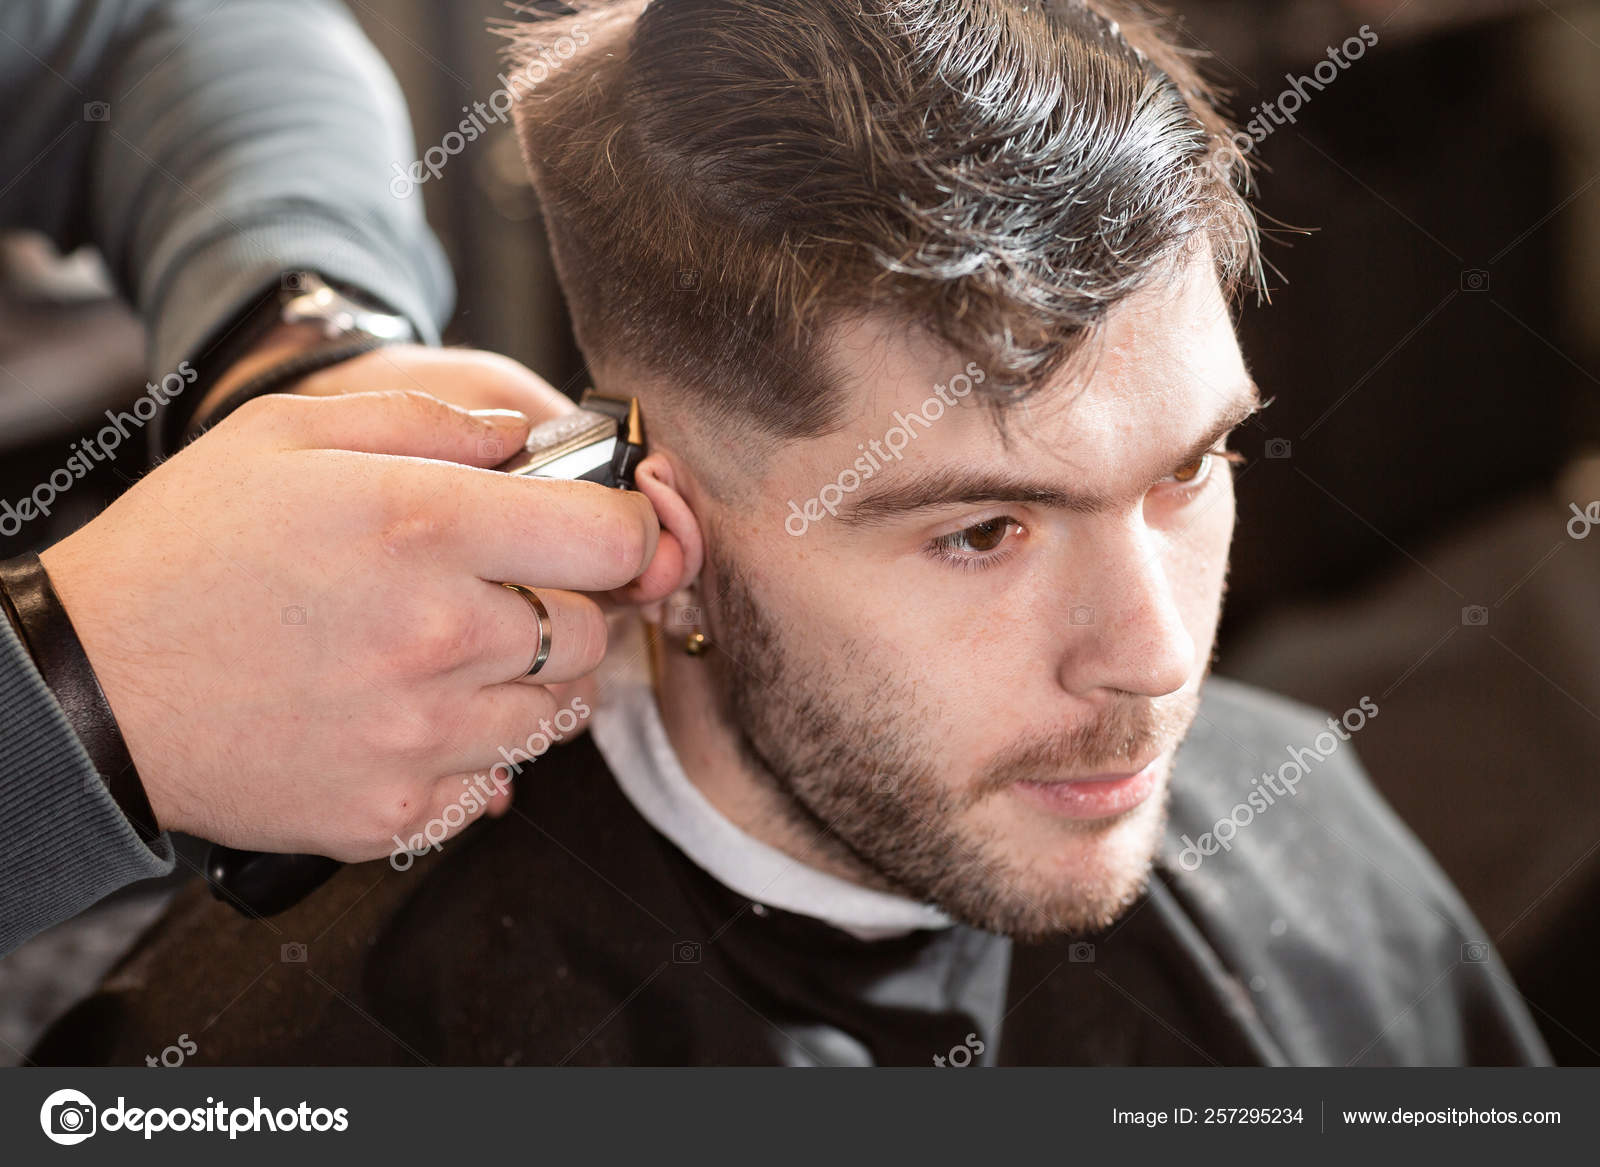 cutting hair with a machine